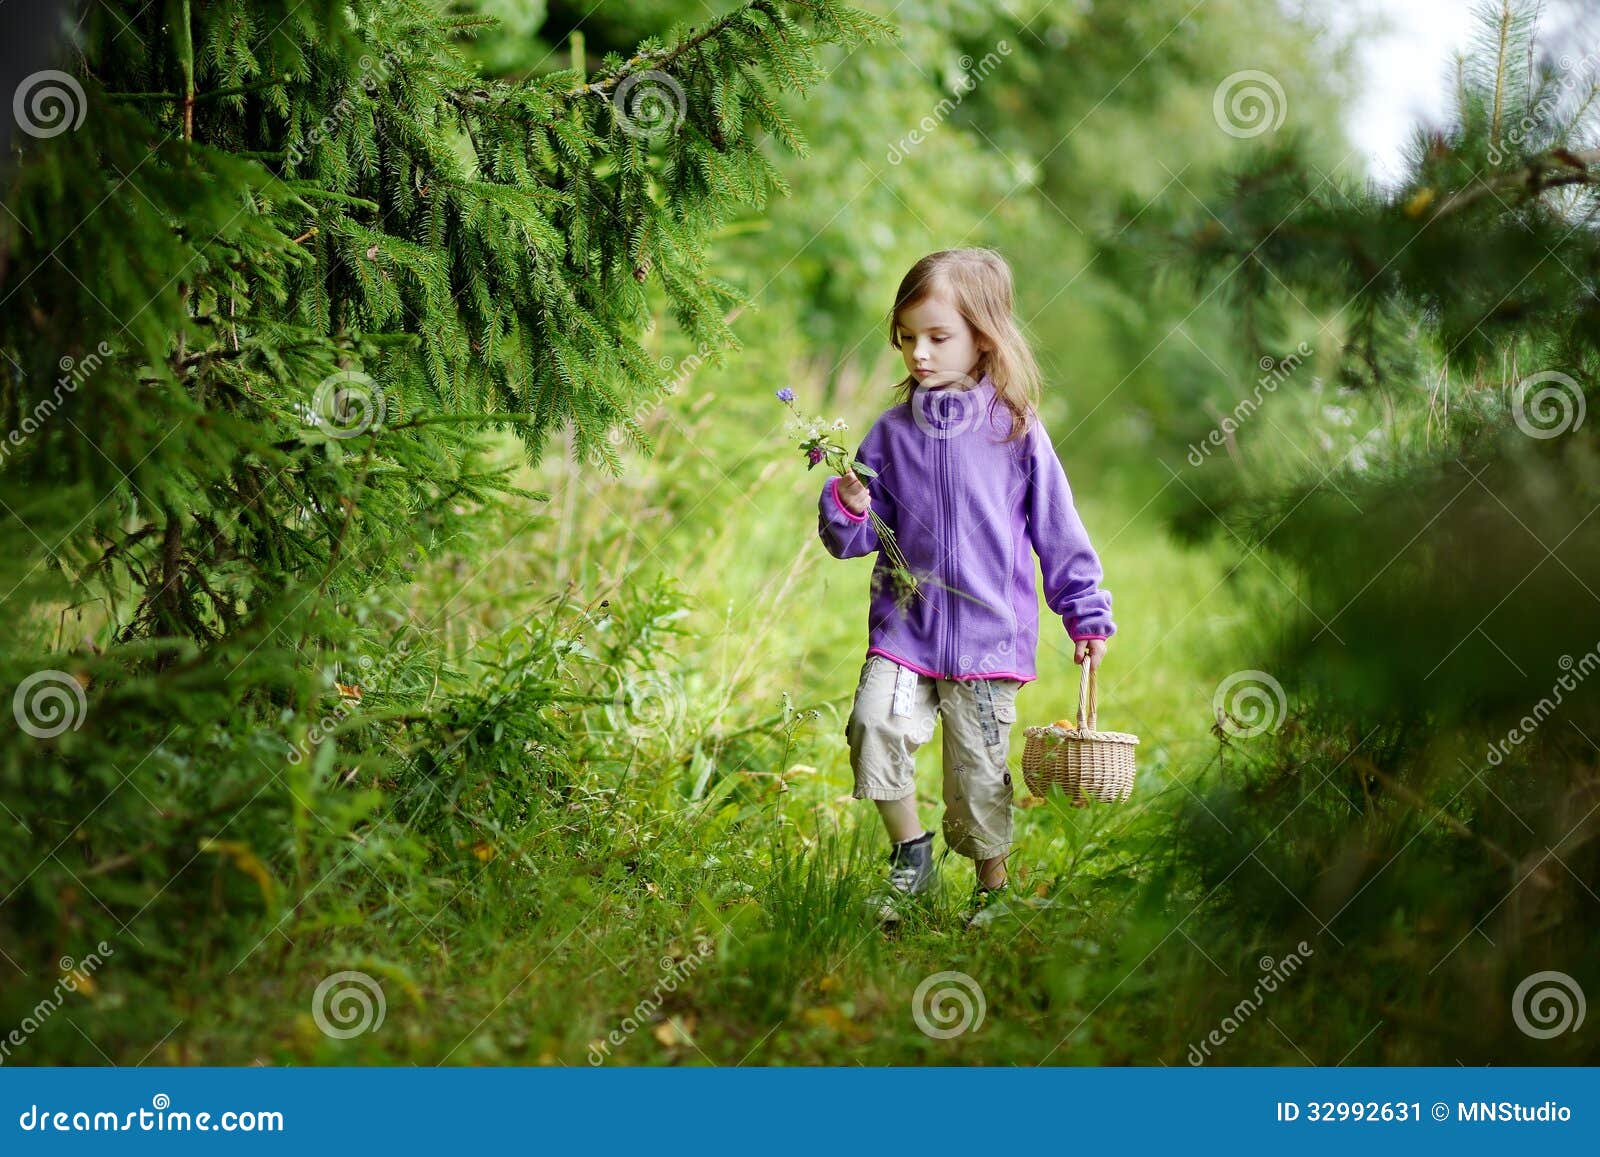 Гуляла девочка в лесу. Девочка гуляет в лесу. Маленькая девка в лесу. Прогулка в лесу дети лето. Маленький ребенок в лесу.